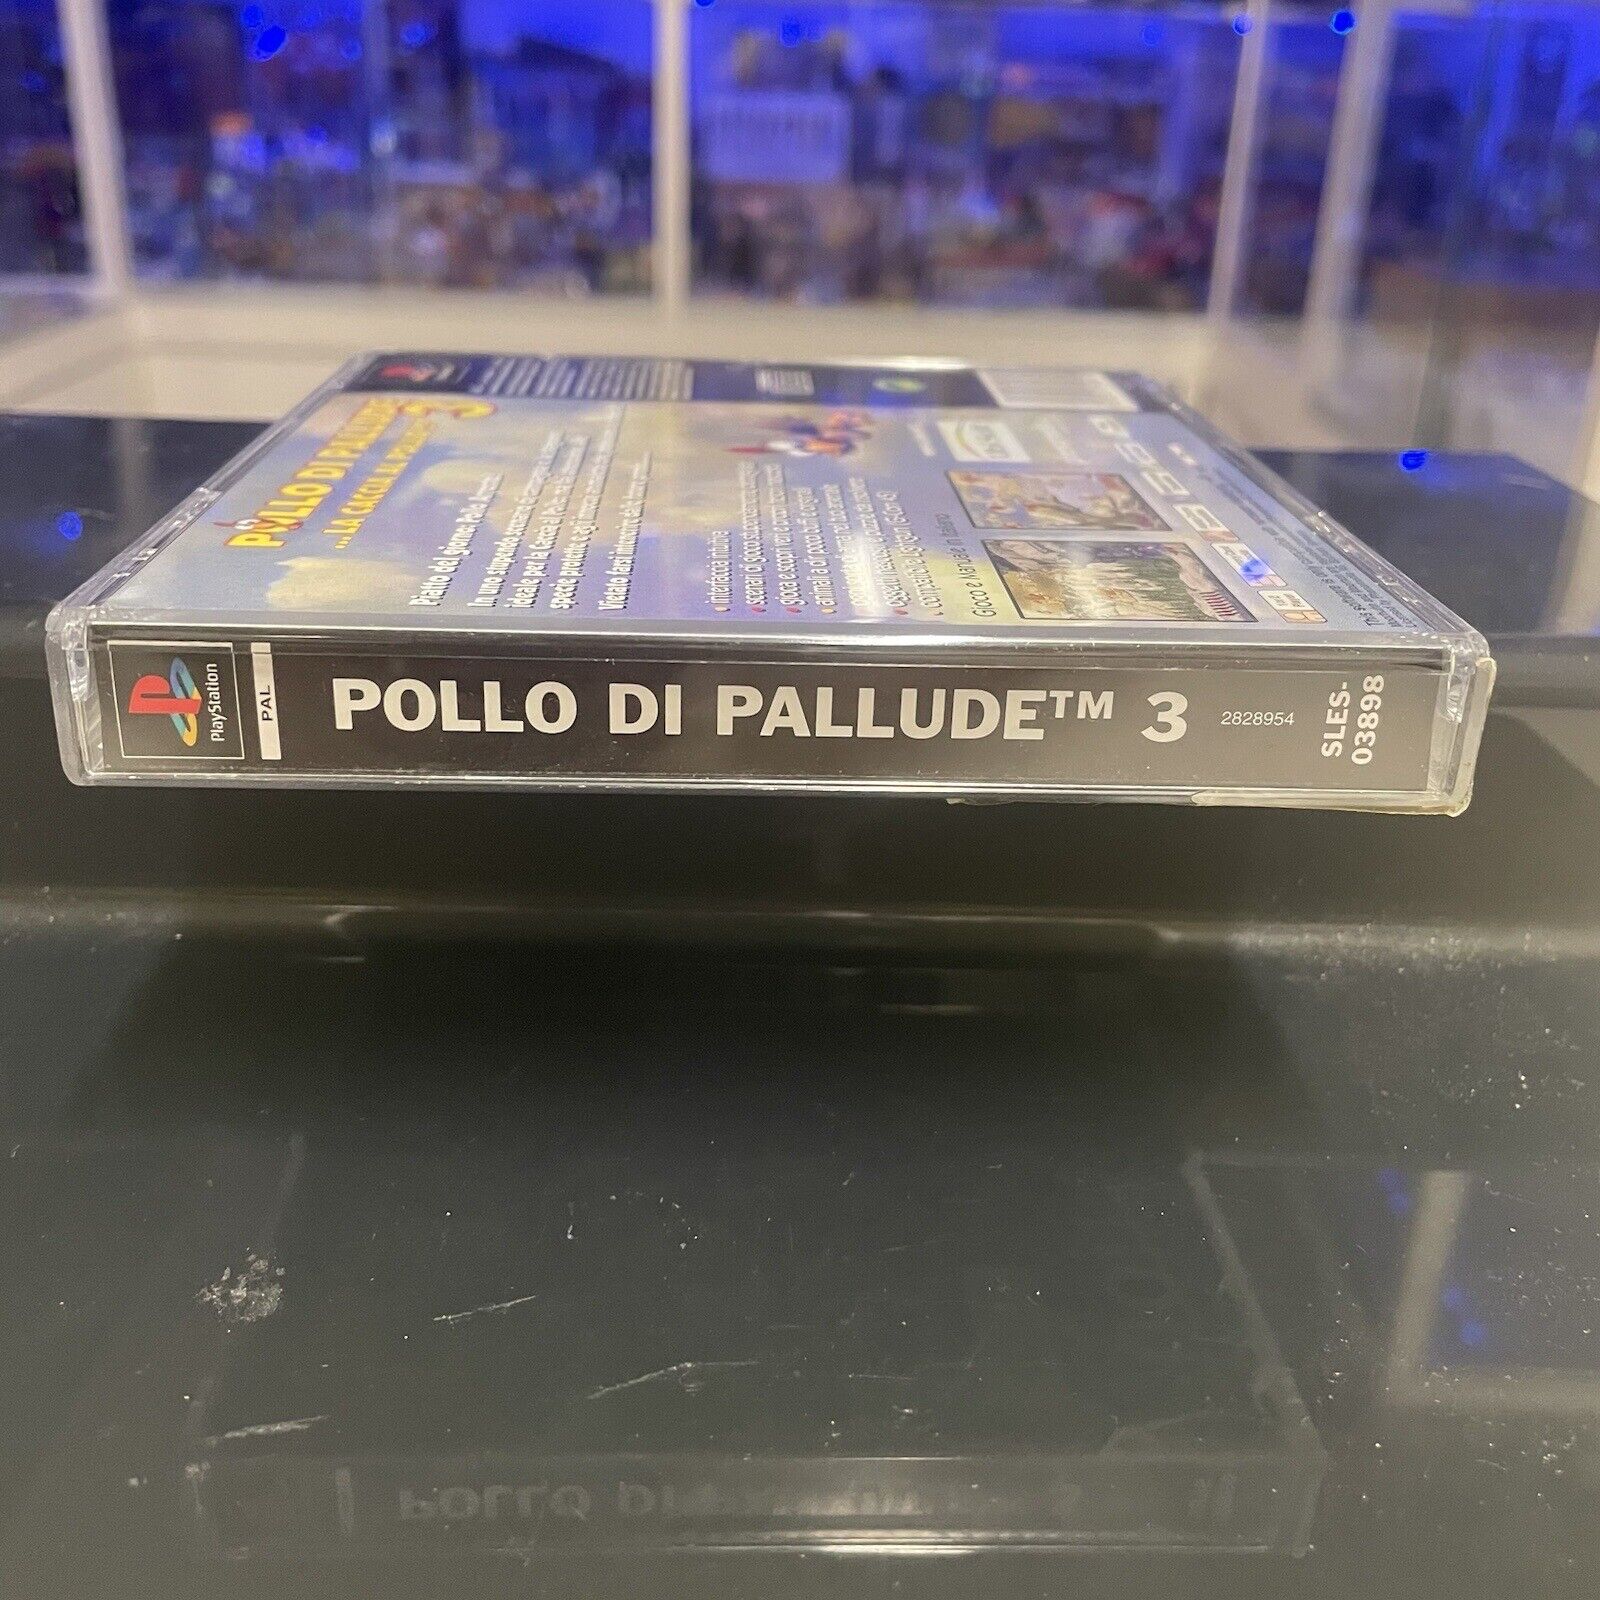 Ps1-Pollo-di-Pallude-3-la-caccia-al-pollo-Sony-Playstation-Pal-145340928881-6